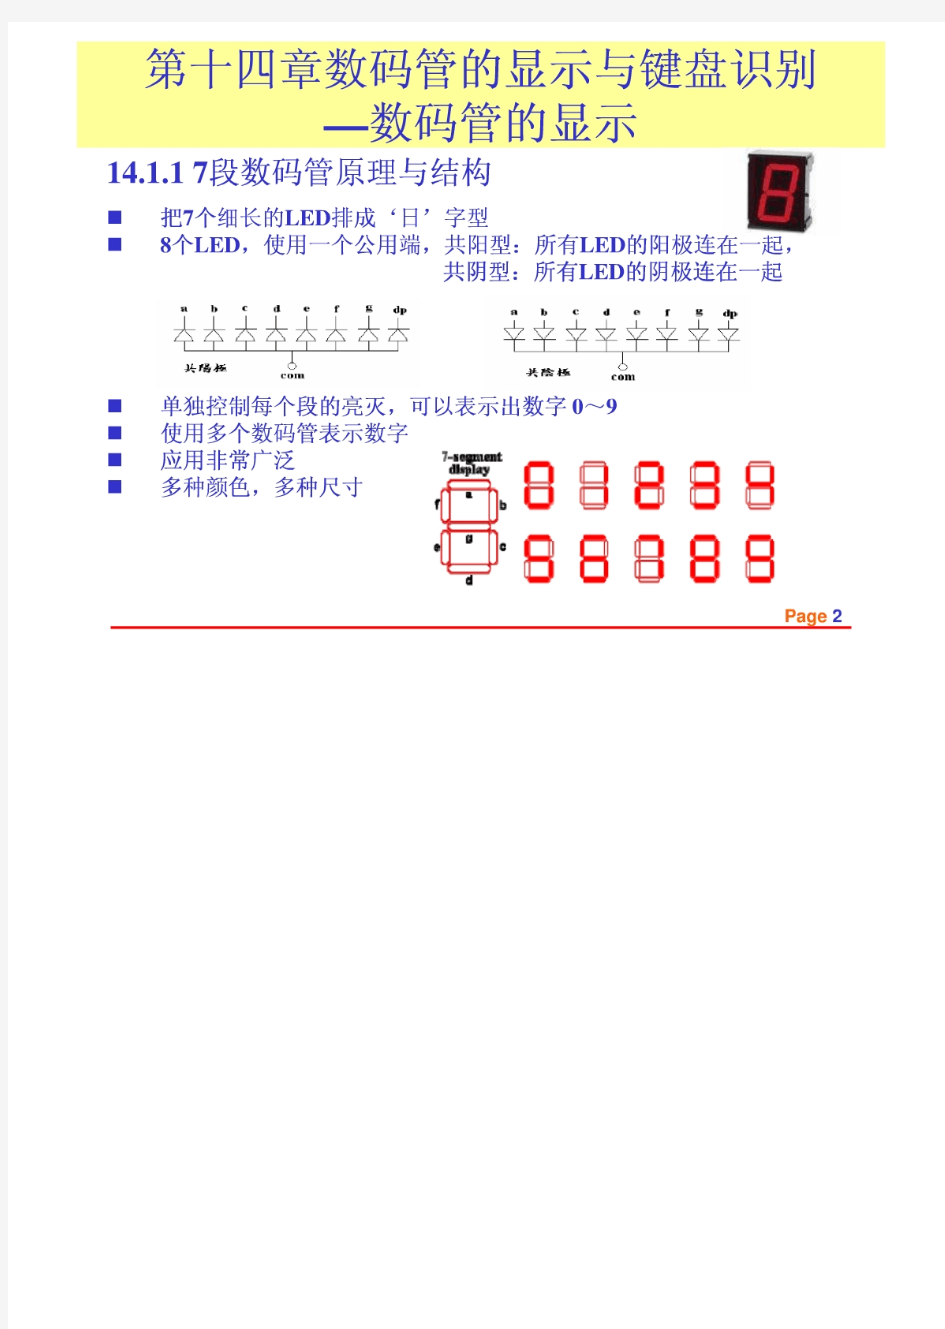 飞思卡尔s12单片机-动态数码管显示与键盘模块(1)